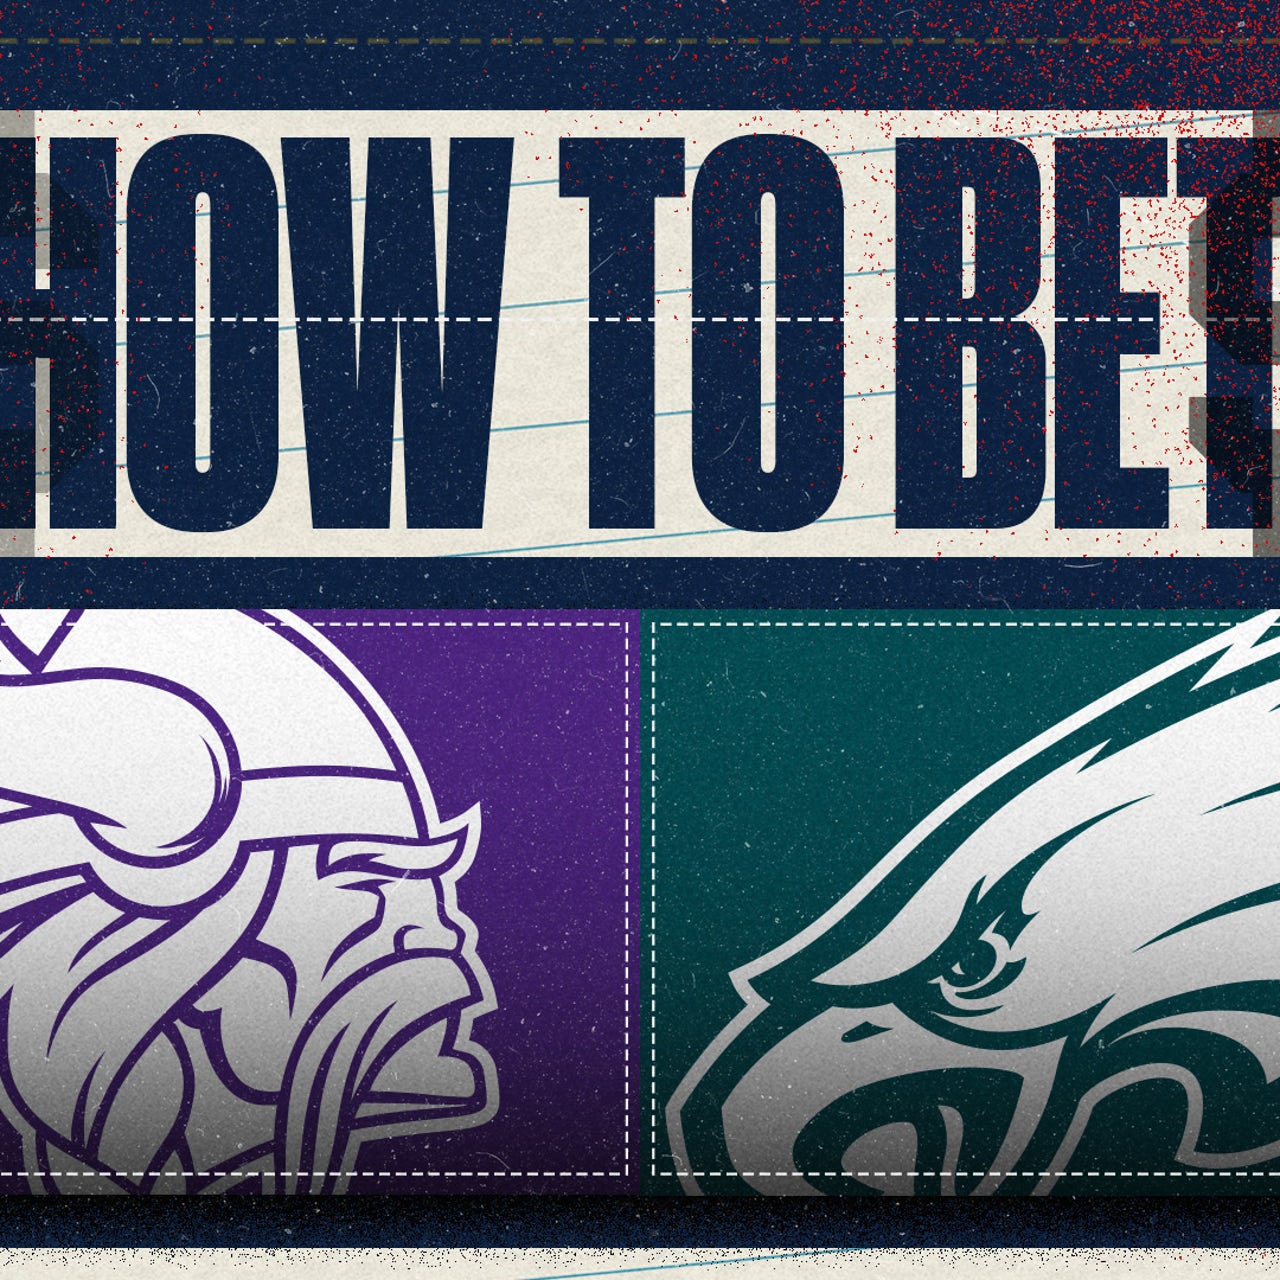 Philadelphia Eagles versus Minnesota Vikings 2019: How to watch Week 6